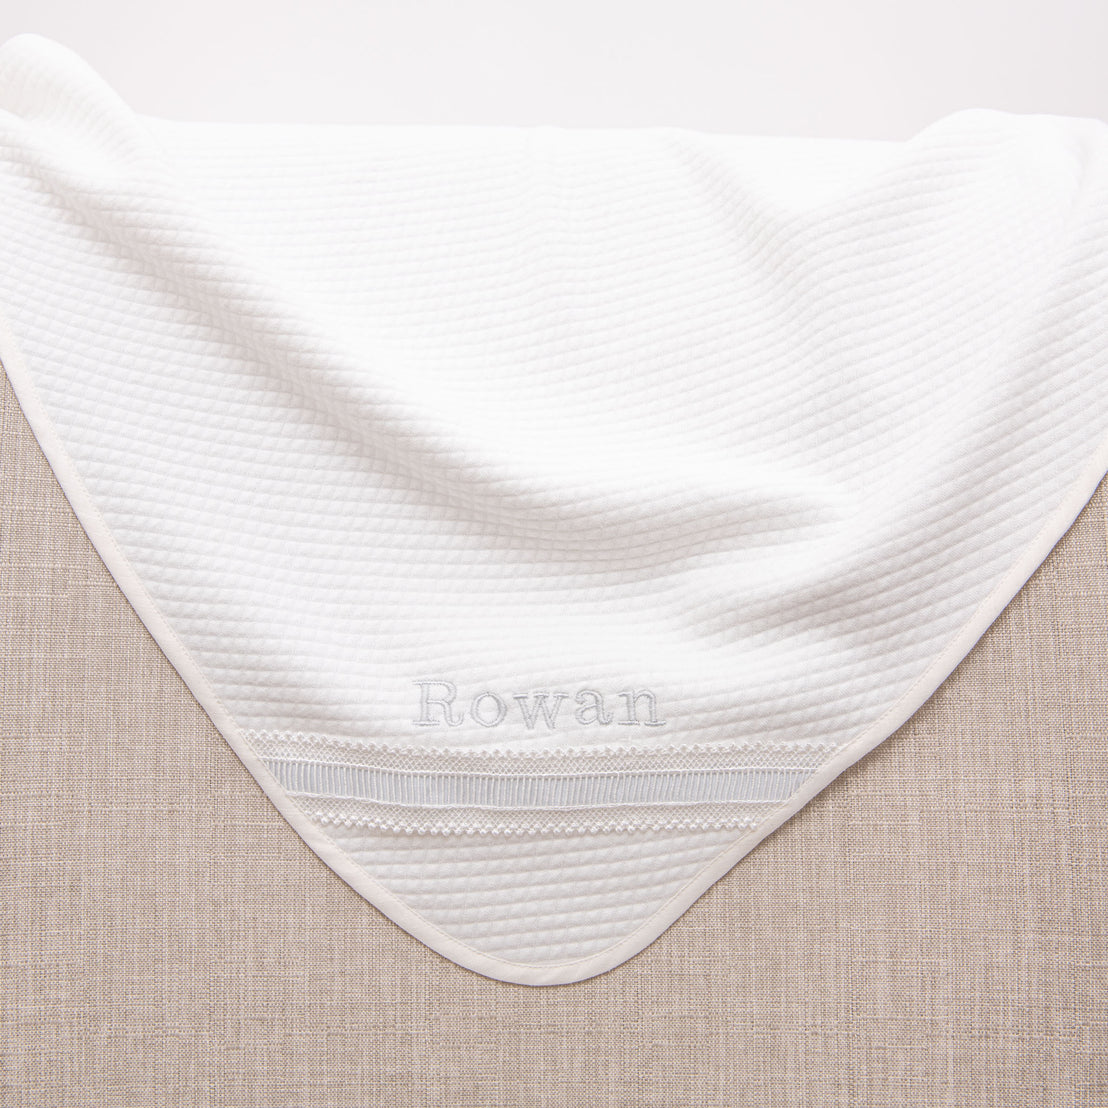 Rowan Personalized Blanket